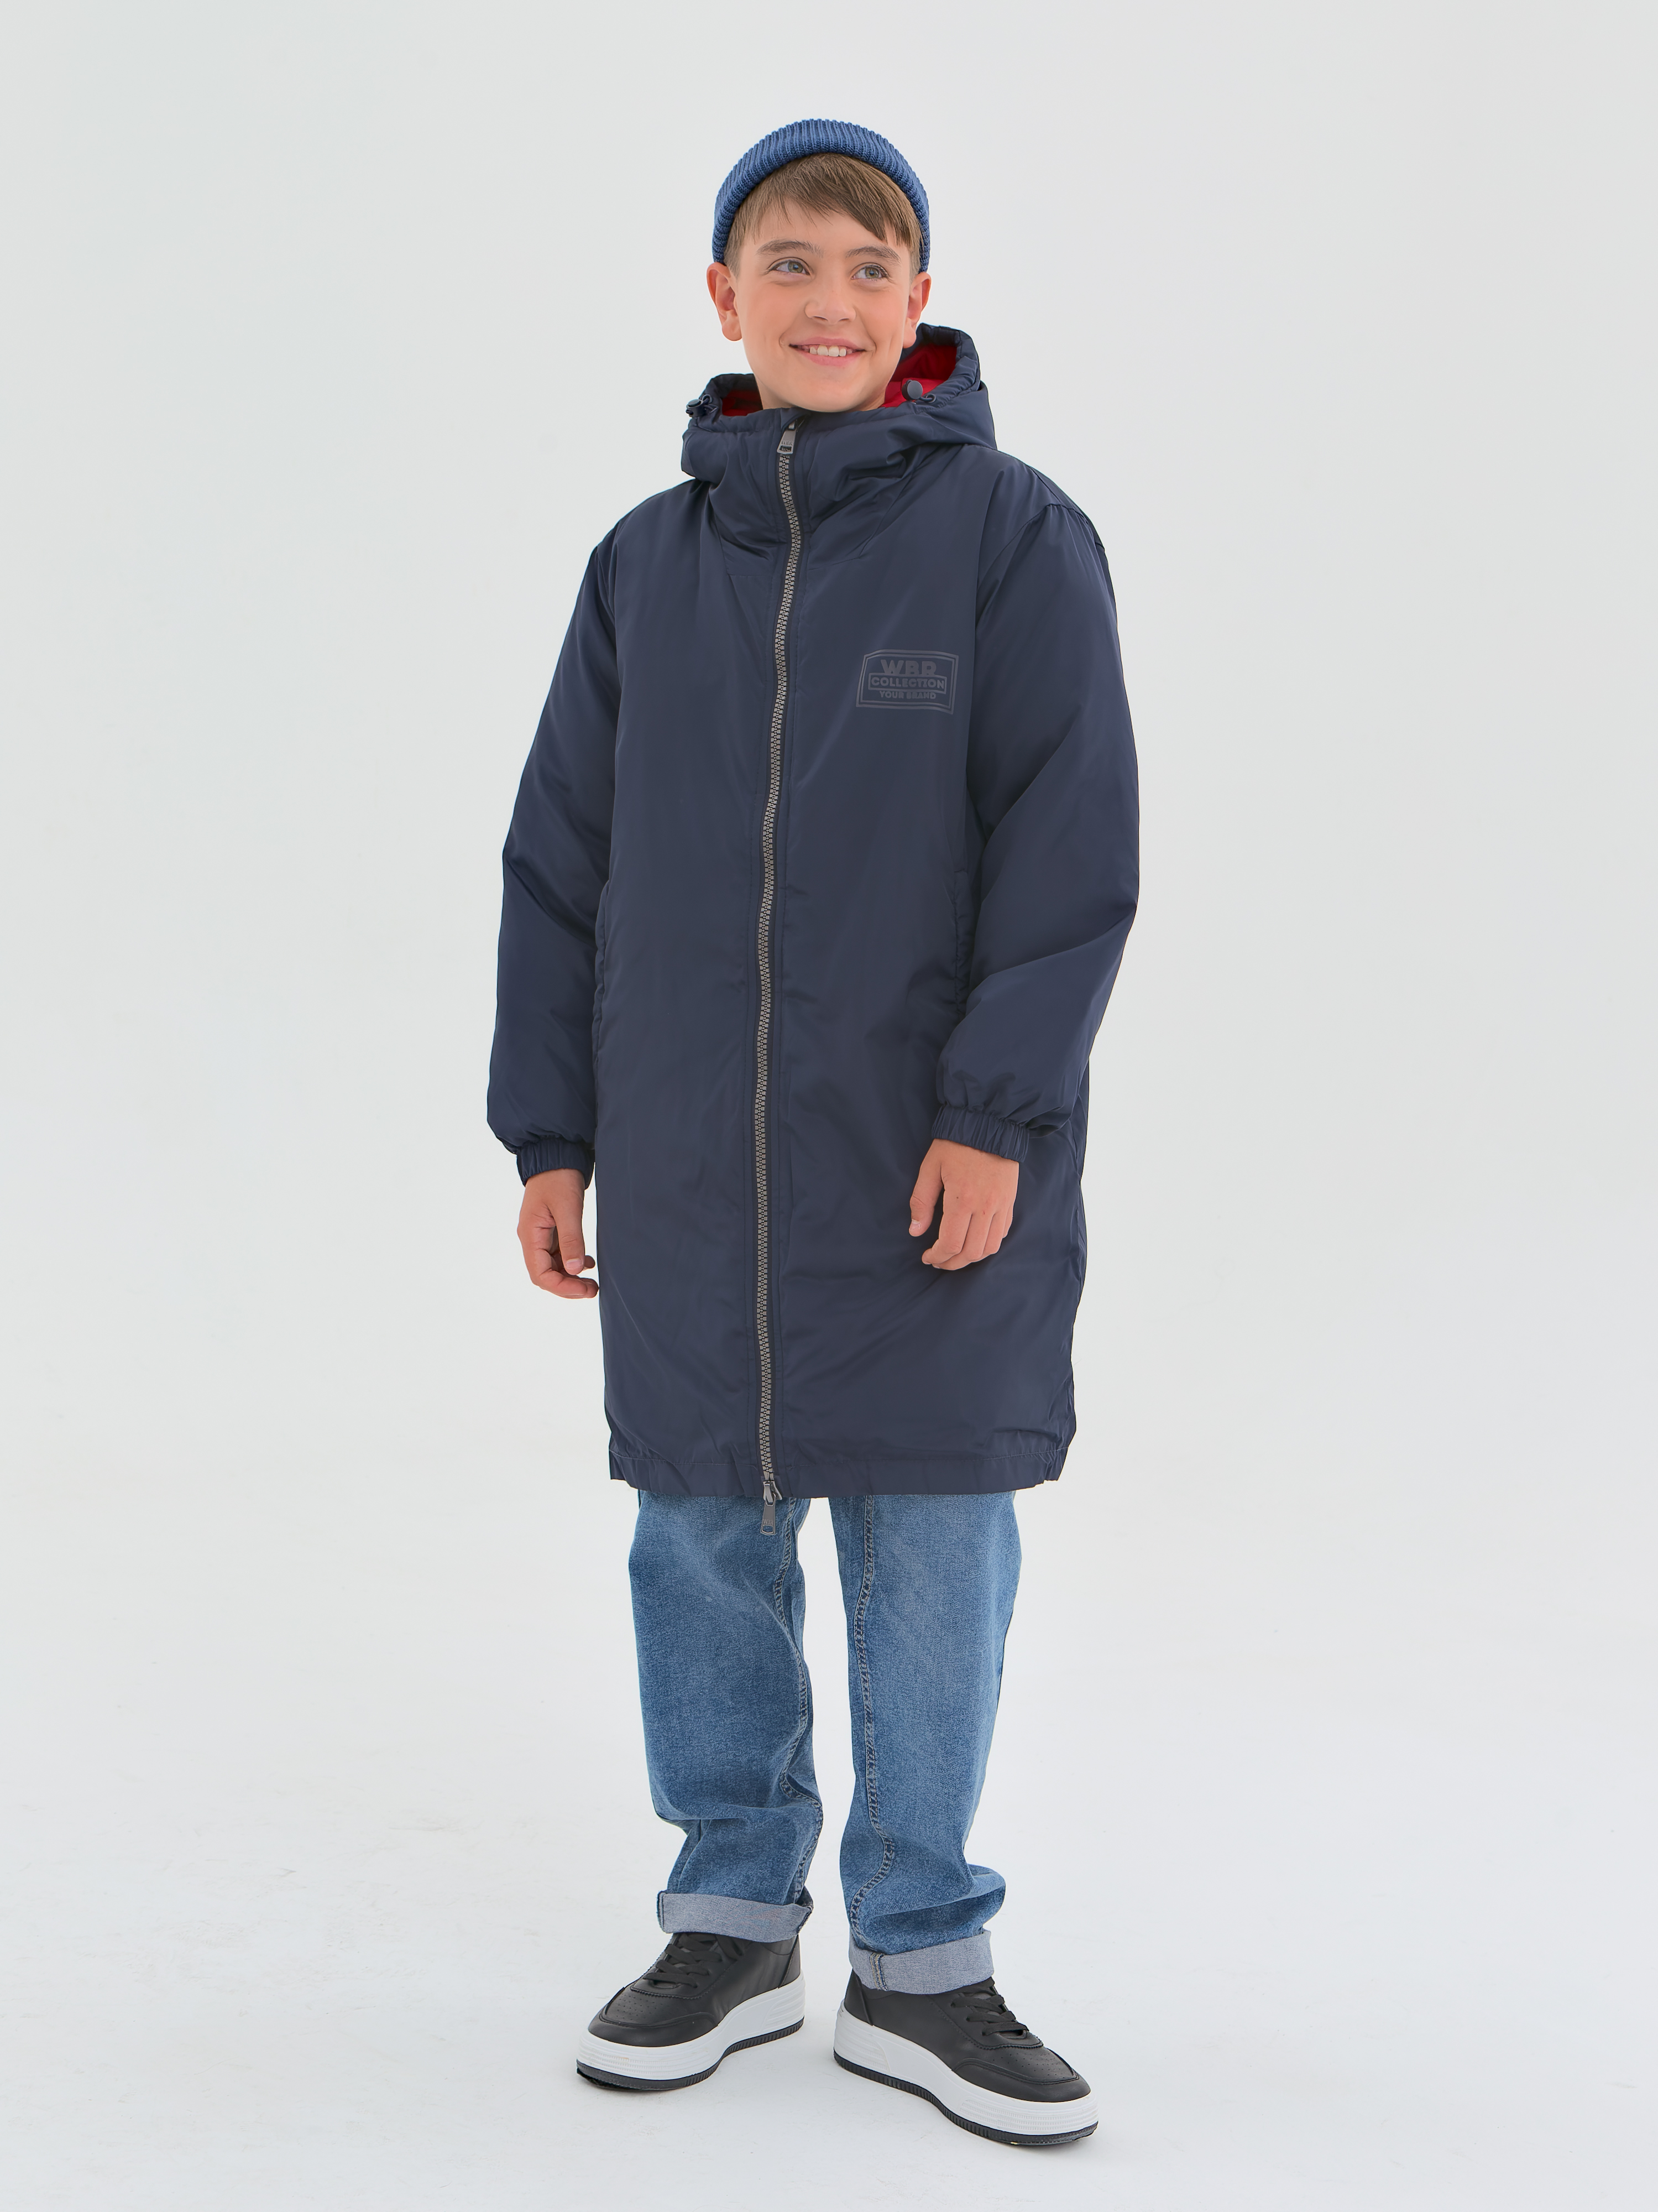 Пальто детское WBR 68-006, синий, 140 стеганое пальто пуховик с капюшоном emporio armani детское